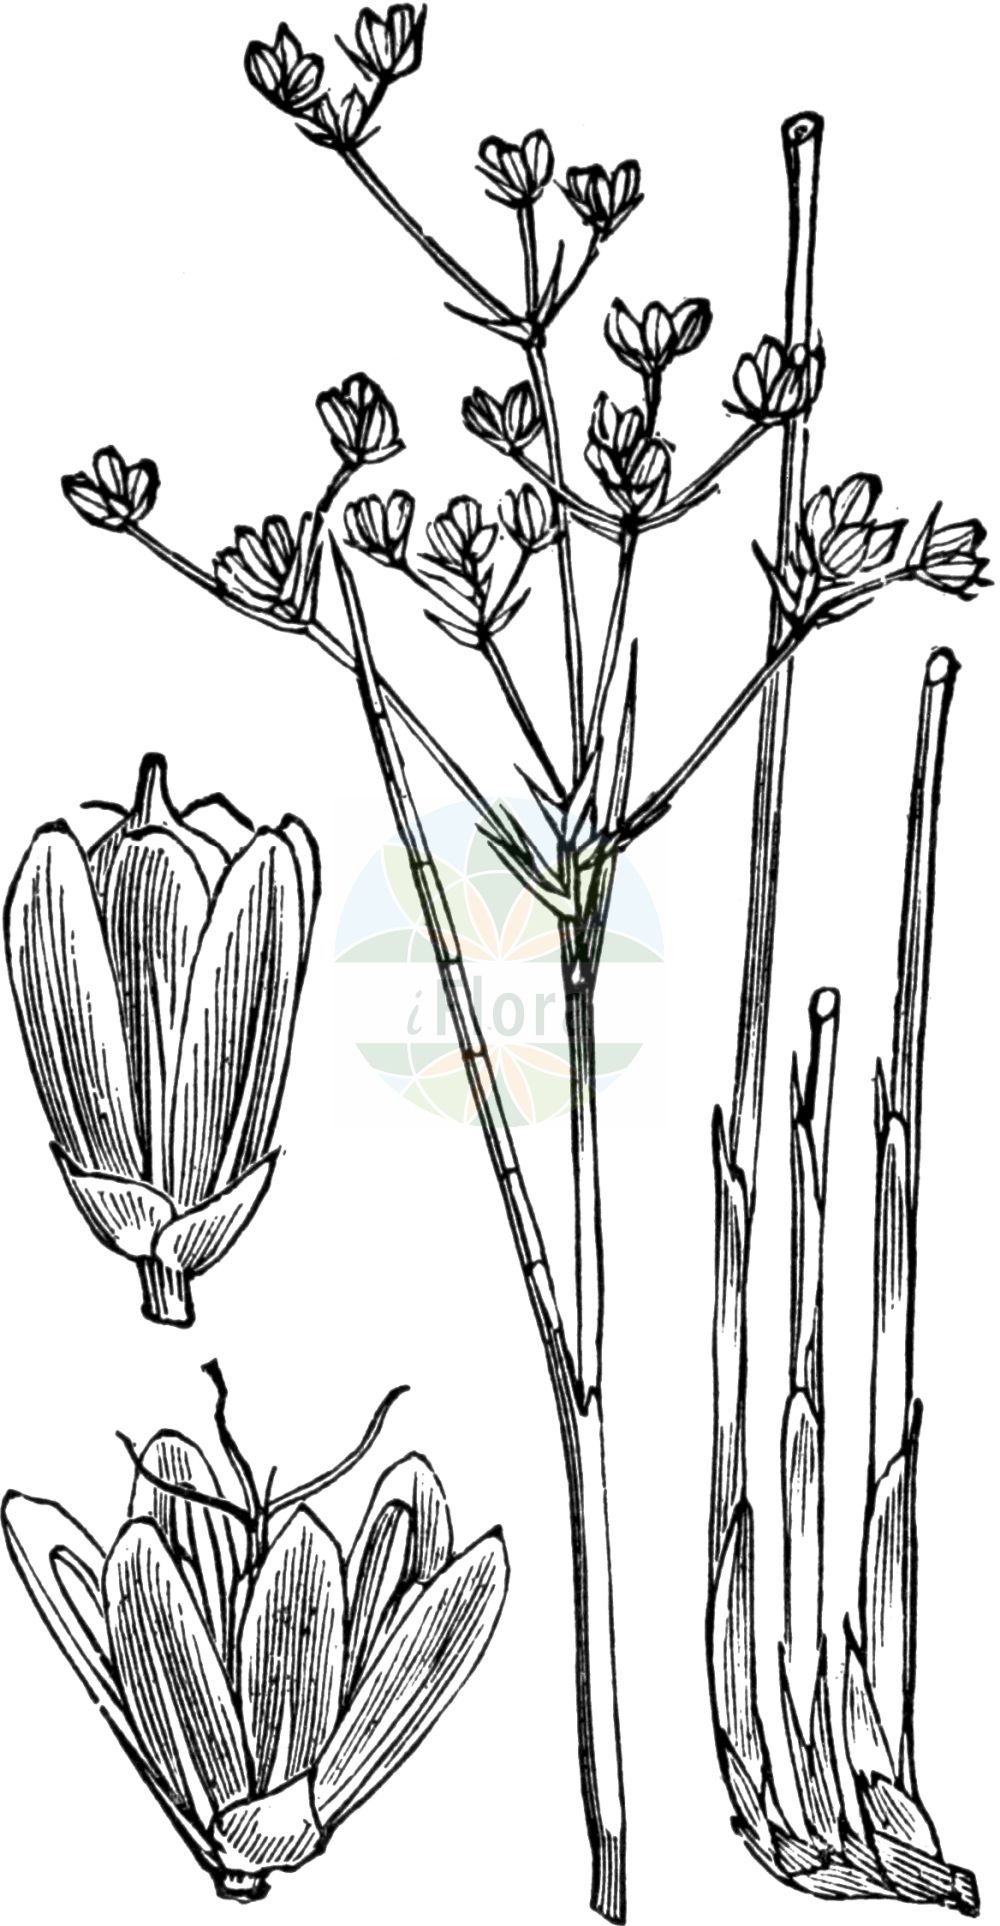 Historische Abbildung von Juncus subnodulosus (Stumpfblütige Binse - Blunt-flowered Rush). Das Bild zeigt Blatt, Bluete, Frucht und Same. ---- Historical Drawing of Juncus subnodulosus (Stumpfblütige Binse - Blunt-flowered Rush). The image is showing leaf, flower, fruit and seed.(Juncus subnodulosus,Stumpfblütige Binse,Blunt-flowered Rush,Juncus bifolius,Juncus divergens,Juncus neesii,Juncus obtusatus,Juncus obtusiflorus,Juncus retroflexus,Juncus subnodulosus,Juncus subnodulosus var. condensatus,Stumpfbluetige Binse,Knoetchen-Simse,Knoten-Binse,Blunt-flowered Rush,Bluntflower Rush,Juncus,Binse,Rush,Juncaceae,Binsengewächse,Rush family,Blatt,Bluete,Frucht,Same,leaf,flower,fruit,seed,Fitch et al. (1880))